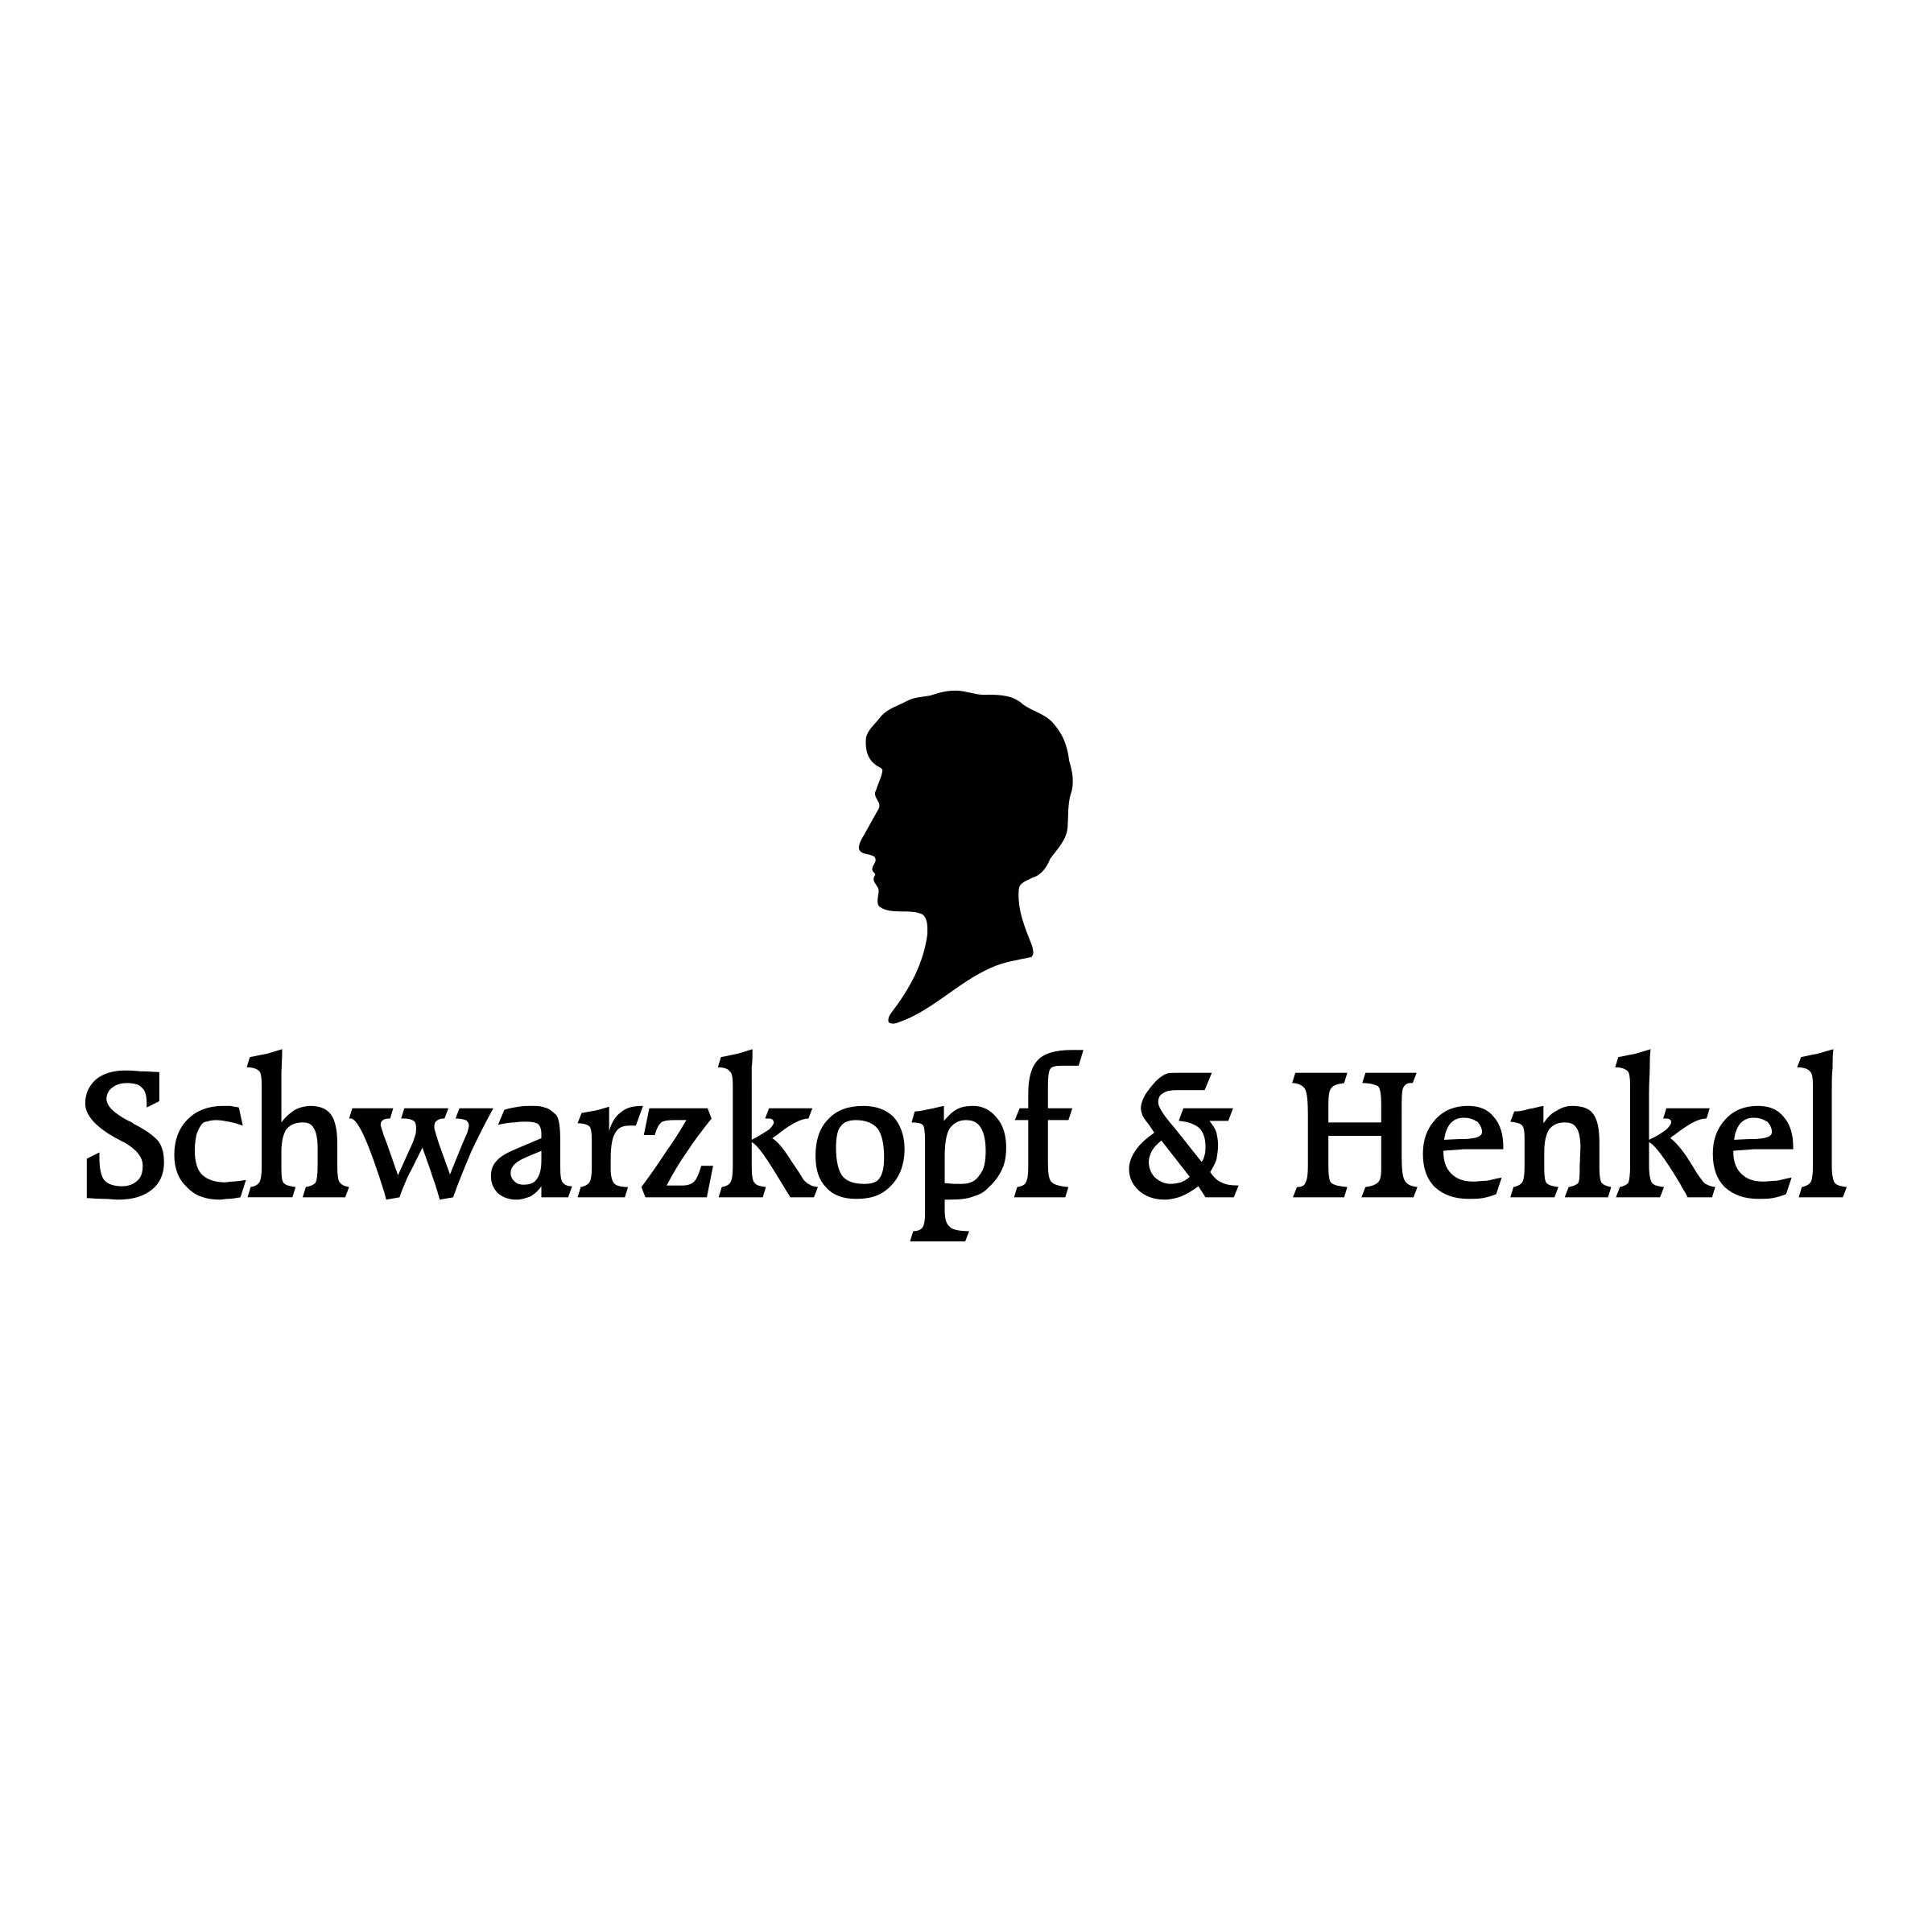 schwarzkopf-henkel-logo-png-transparent.png